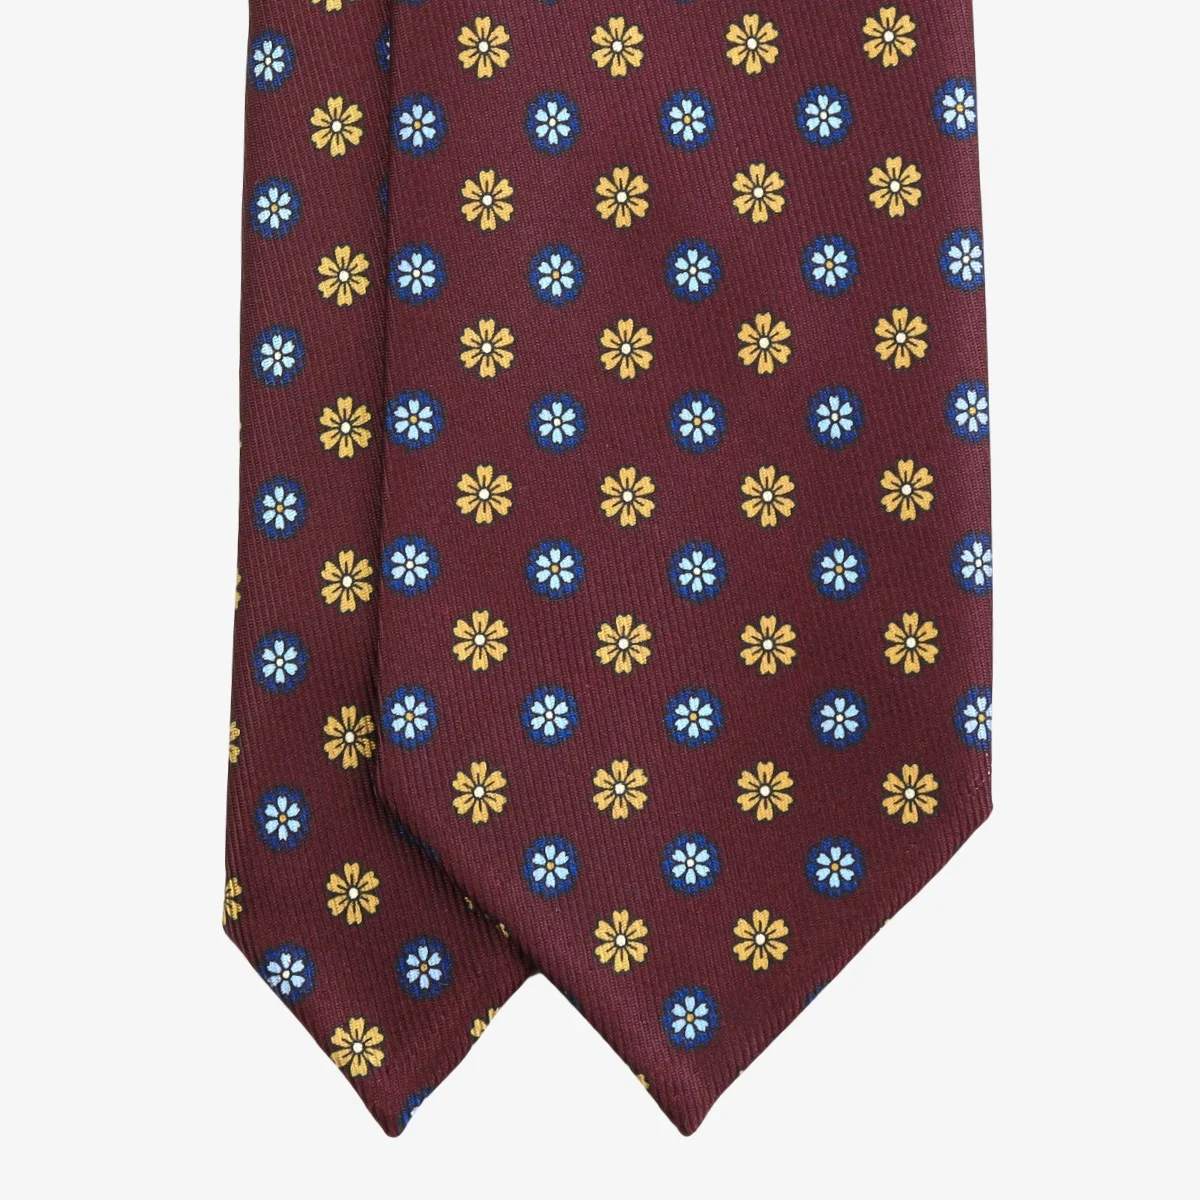 Shibumi Firenze 7 lenkimų tamsiai raudonas šilkinis kaklaraištis su mėlynų ir geltonų gėlių raštu